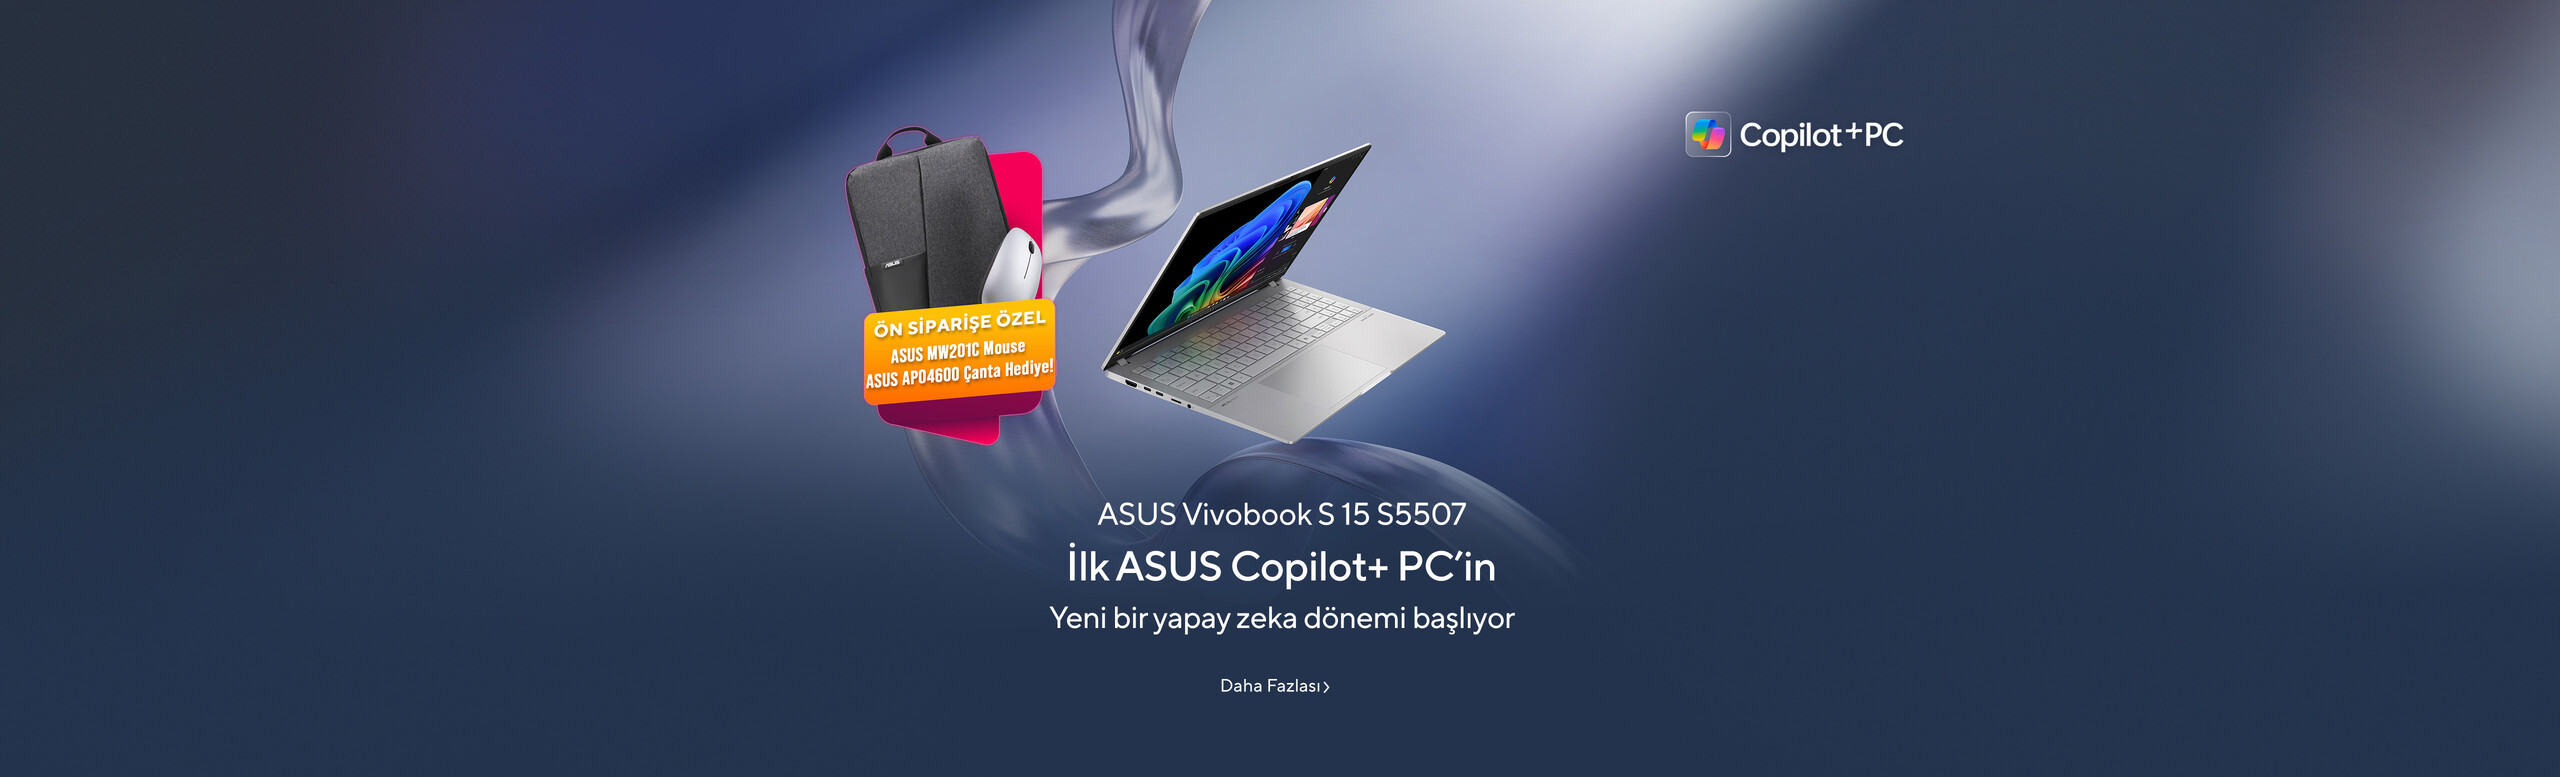 İlk ASUS Copilot+ PC’in -ASUS Vivobook S 15 S5507